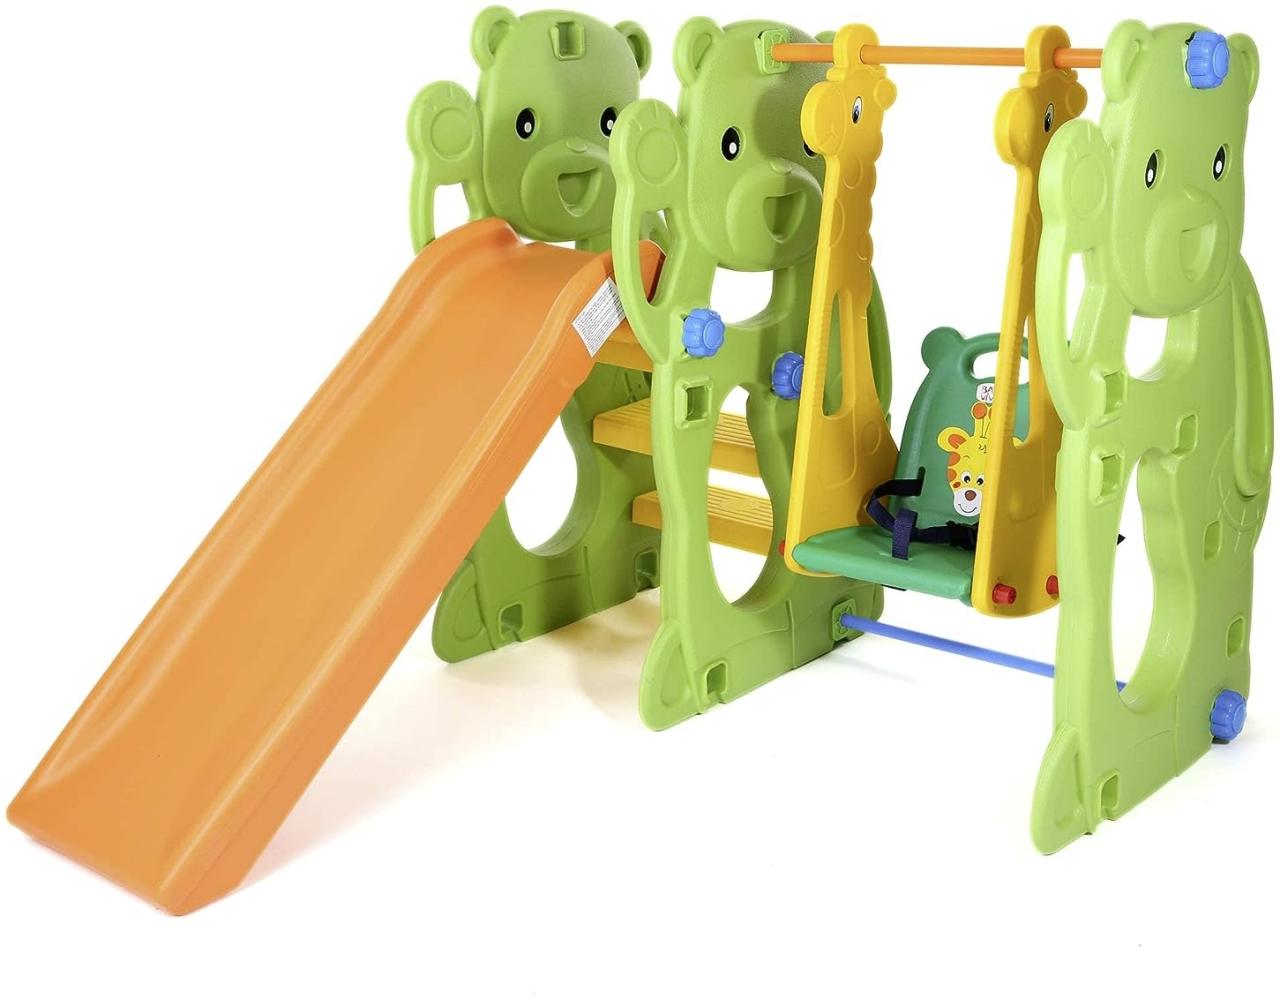 Baby Vivo 'Spielplatzschaukel / Spielgerüst mit Rutsche-Jungle', ca. 145 x 128 x 108 cm (LxBxH), ab einem Jahr, bis 15/30 kg belastbar, gelb/orange/grün Bild 1